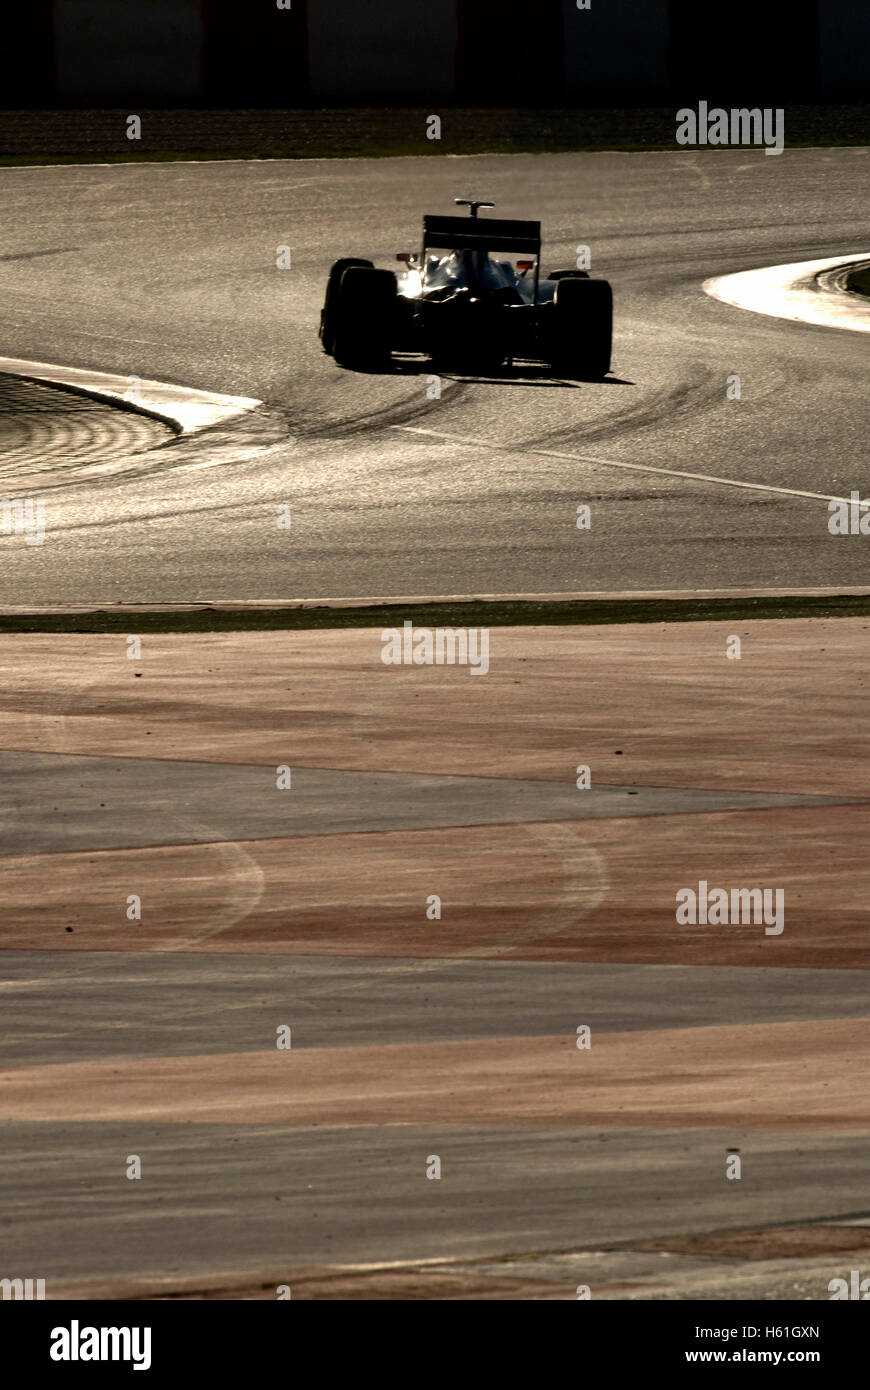 Sport Automobile, la formule 1 essais au Circuit de Catalogne à Barcelone, Espagne, Europe Banque D'Images